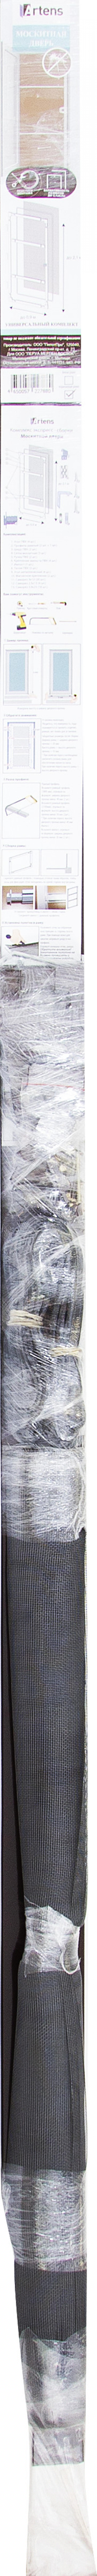 Рамочная москитная сетка Artens для двери 210x90 см коричневая (комплект для сборки)